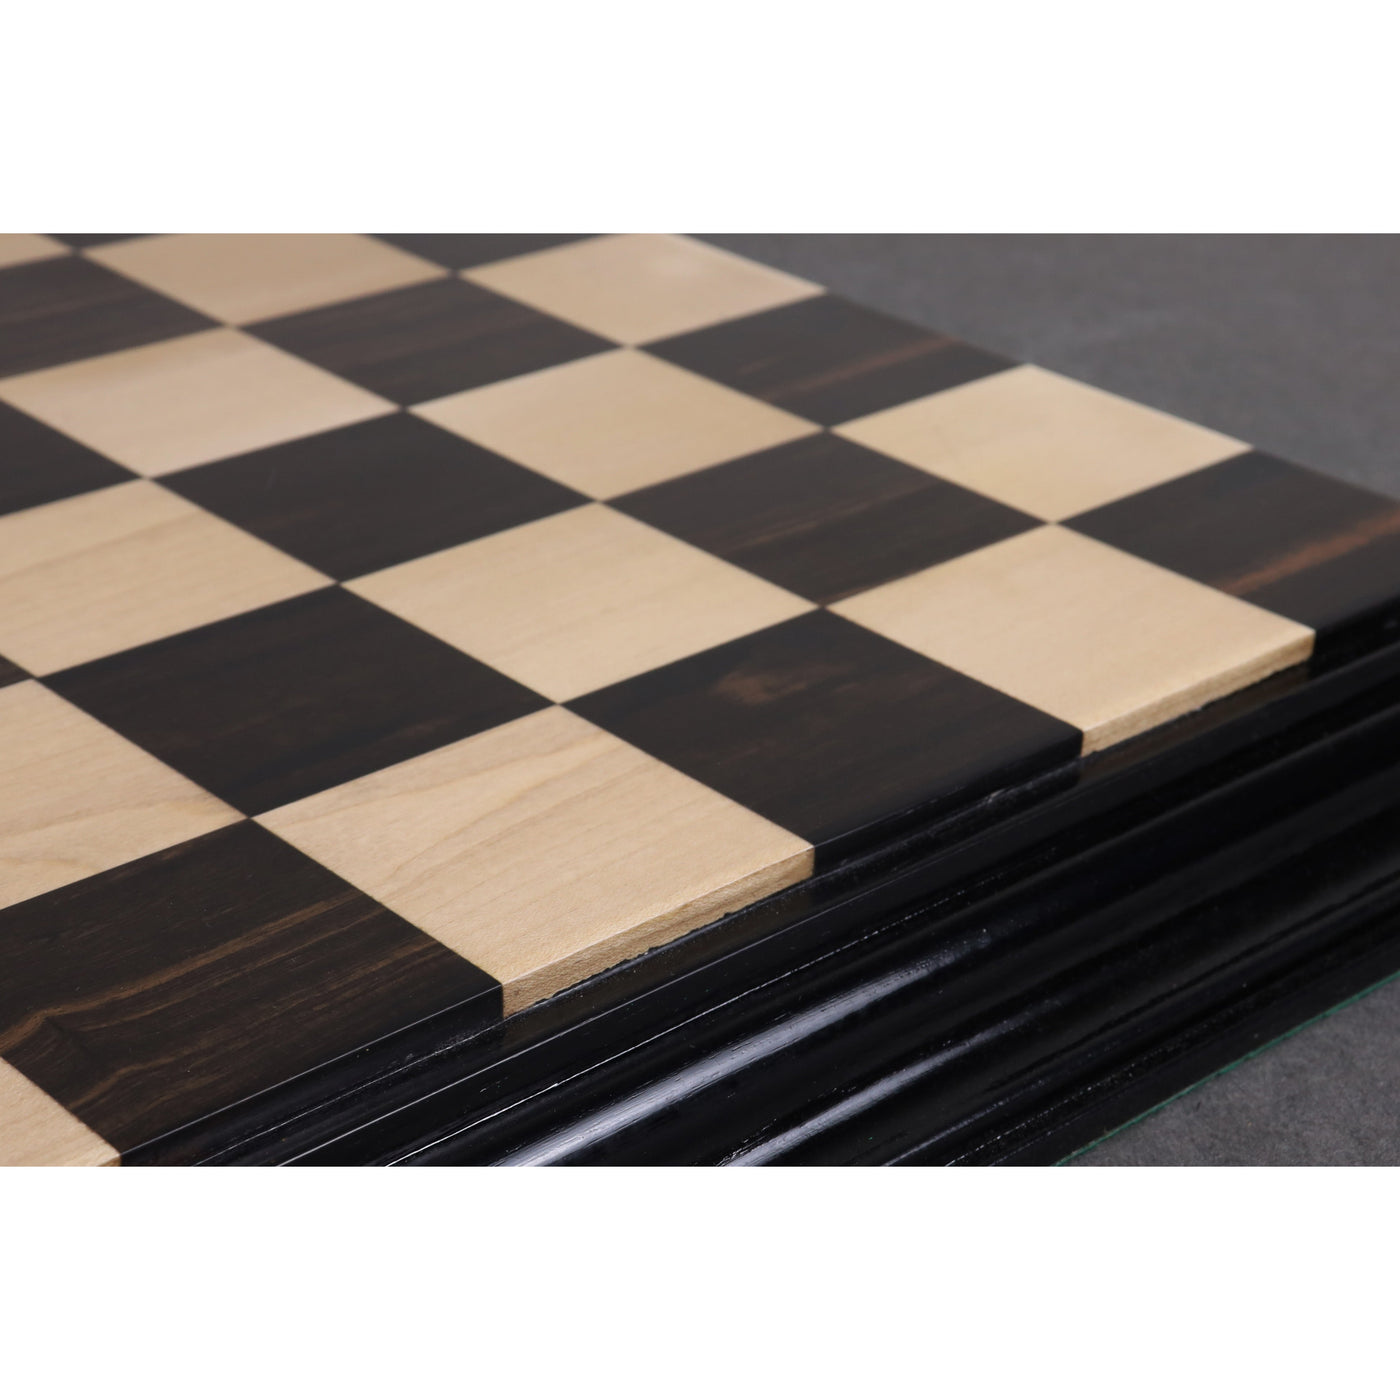 Slightly Imperfect 21" Ebony & Maple Wood Luxury Chess board 